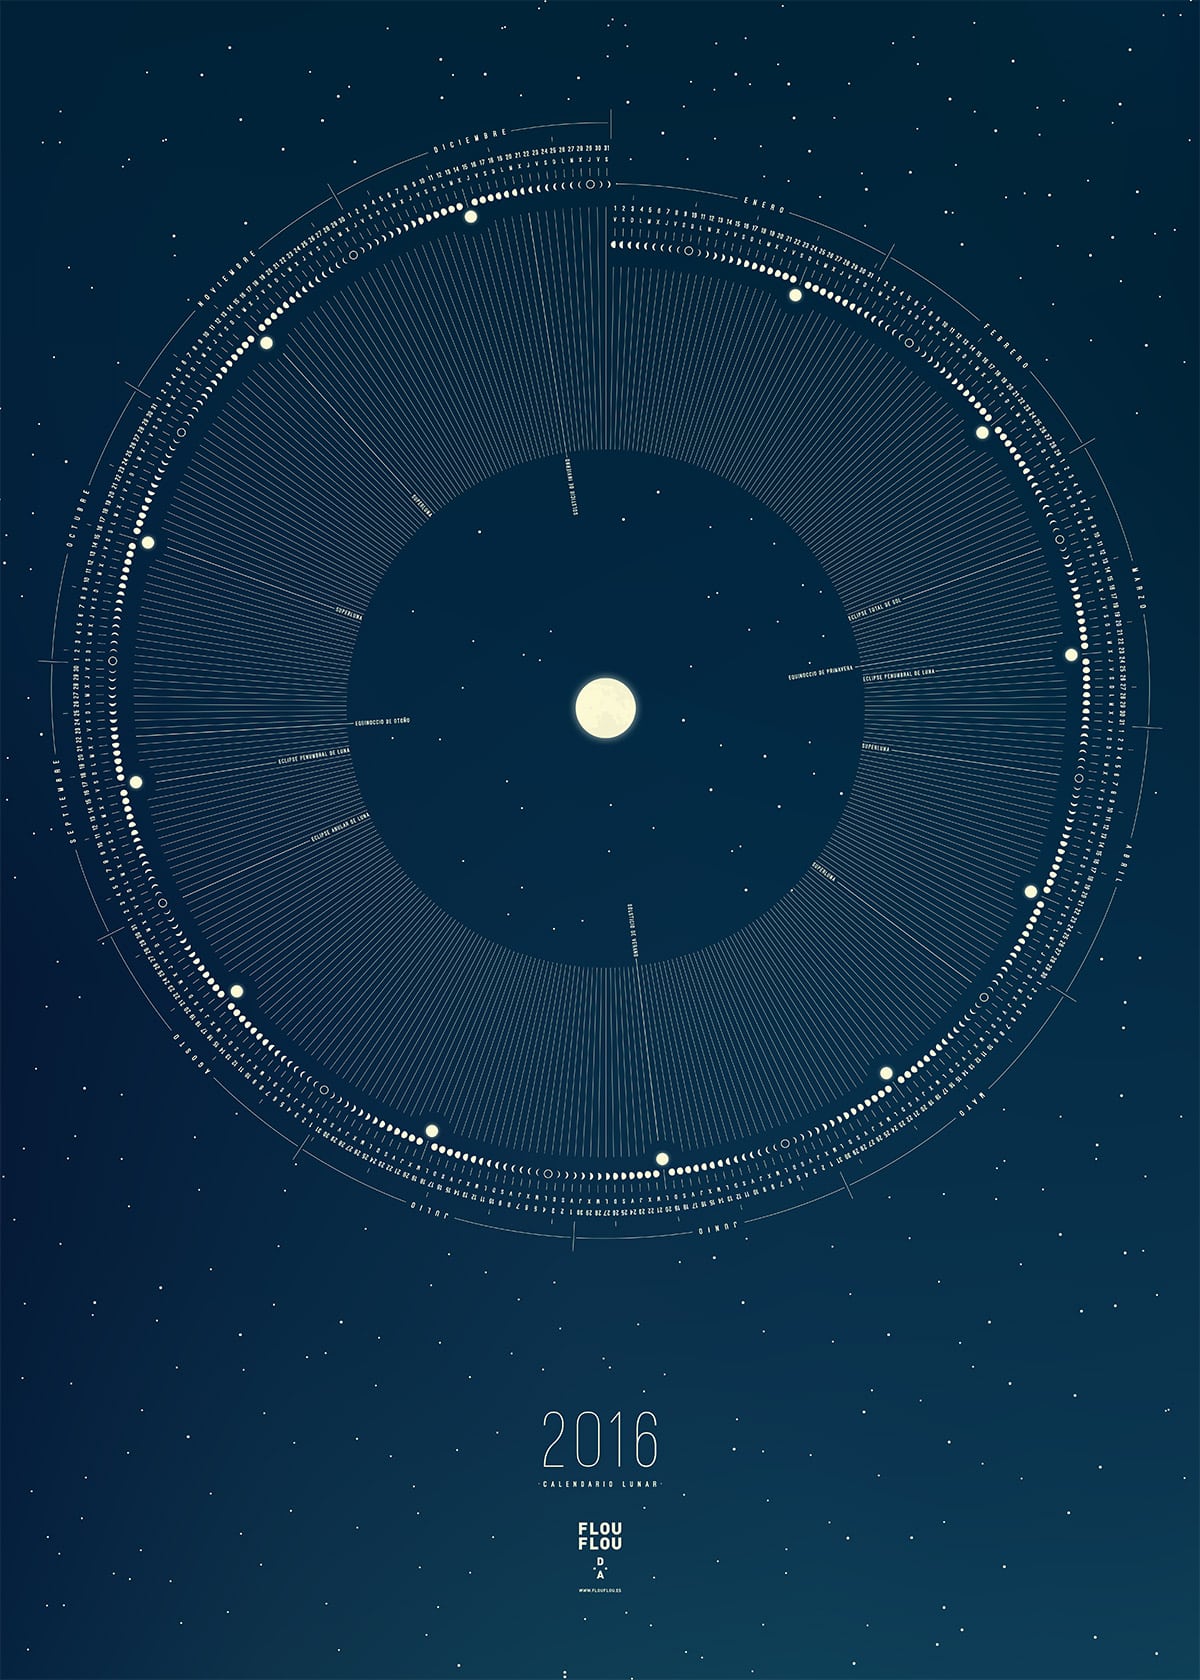 Calendario Lunar diseñado por FlouFlou